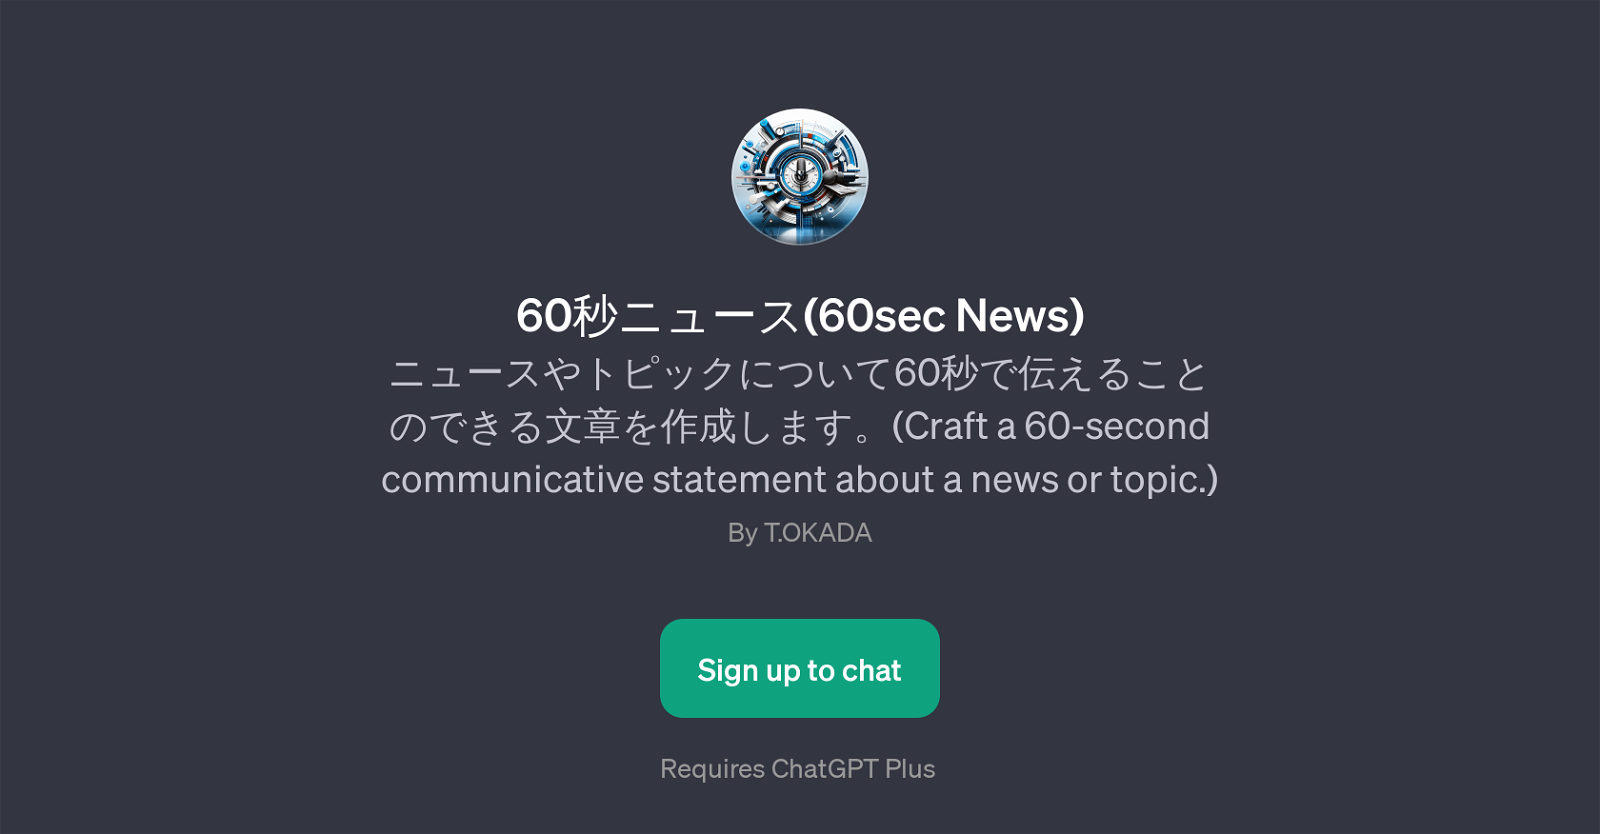 60(60sec News) website